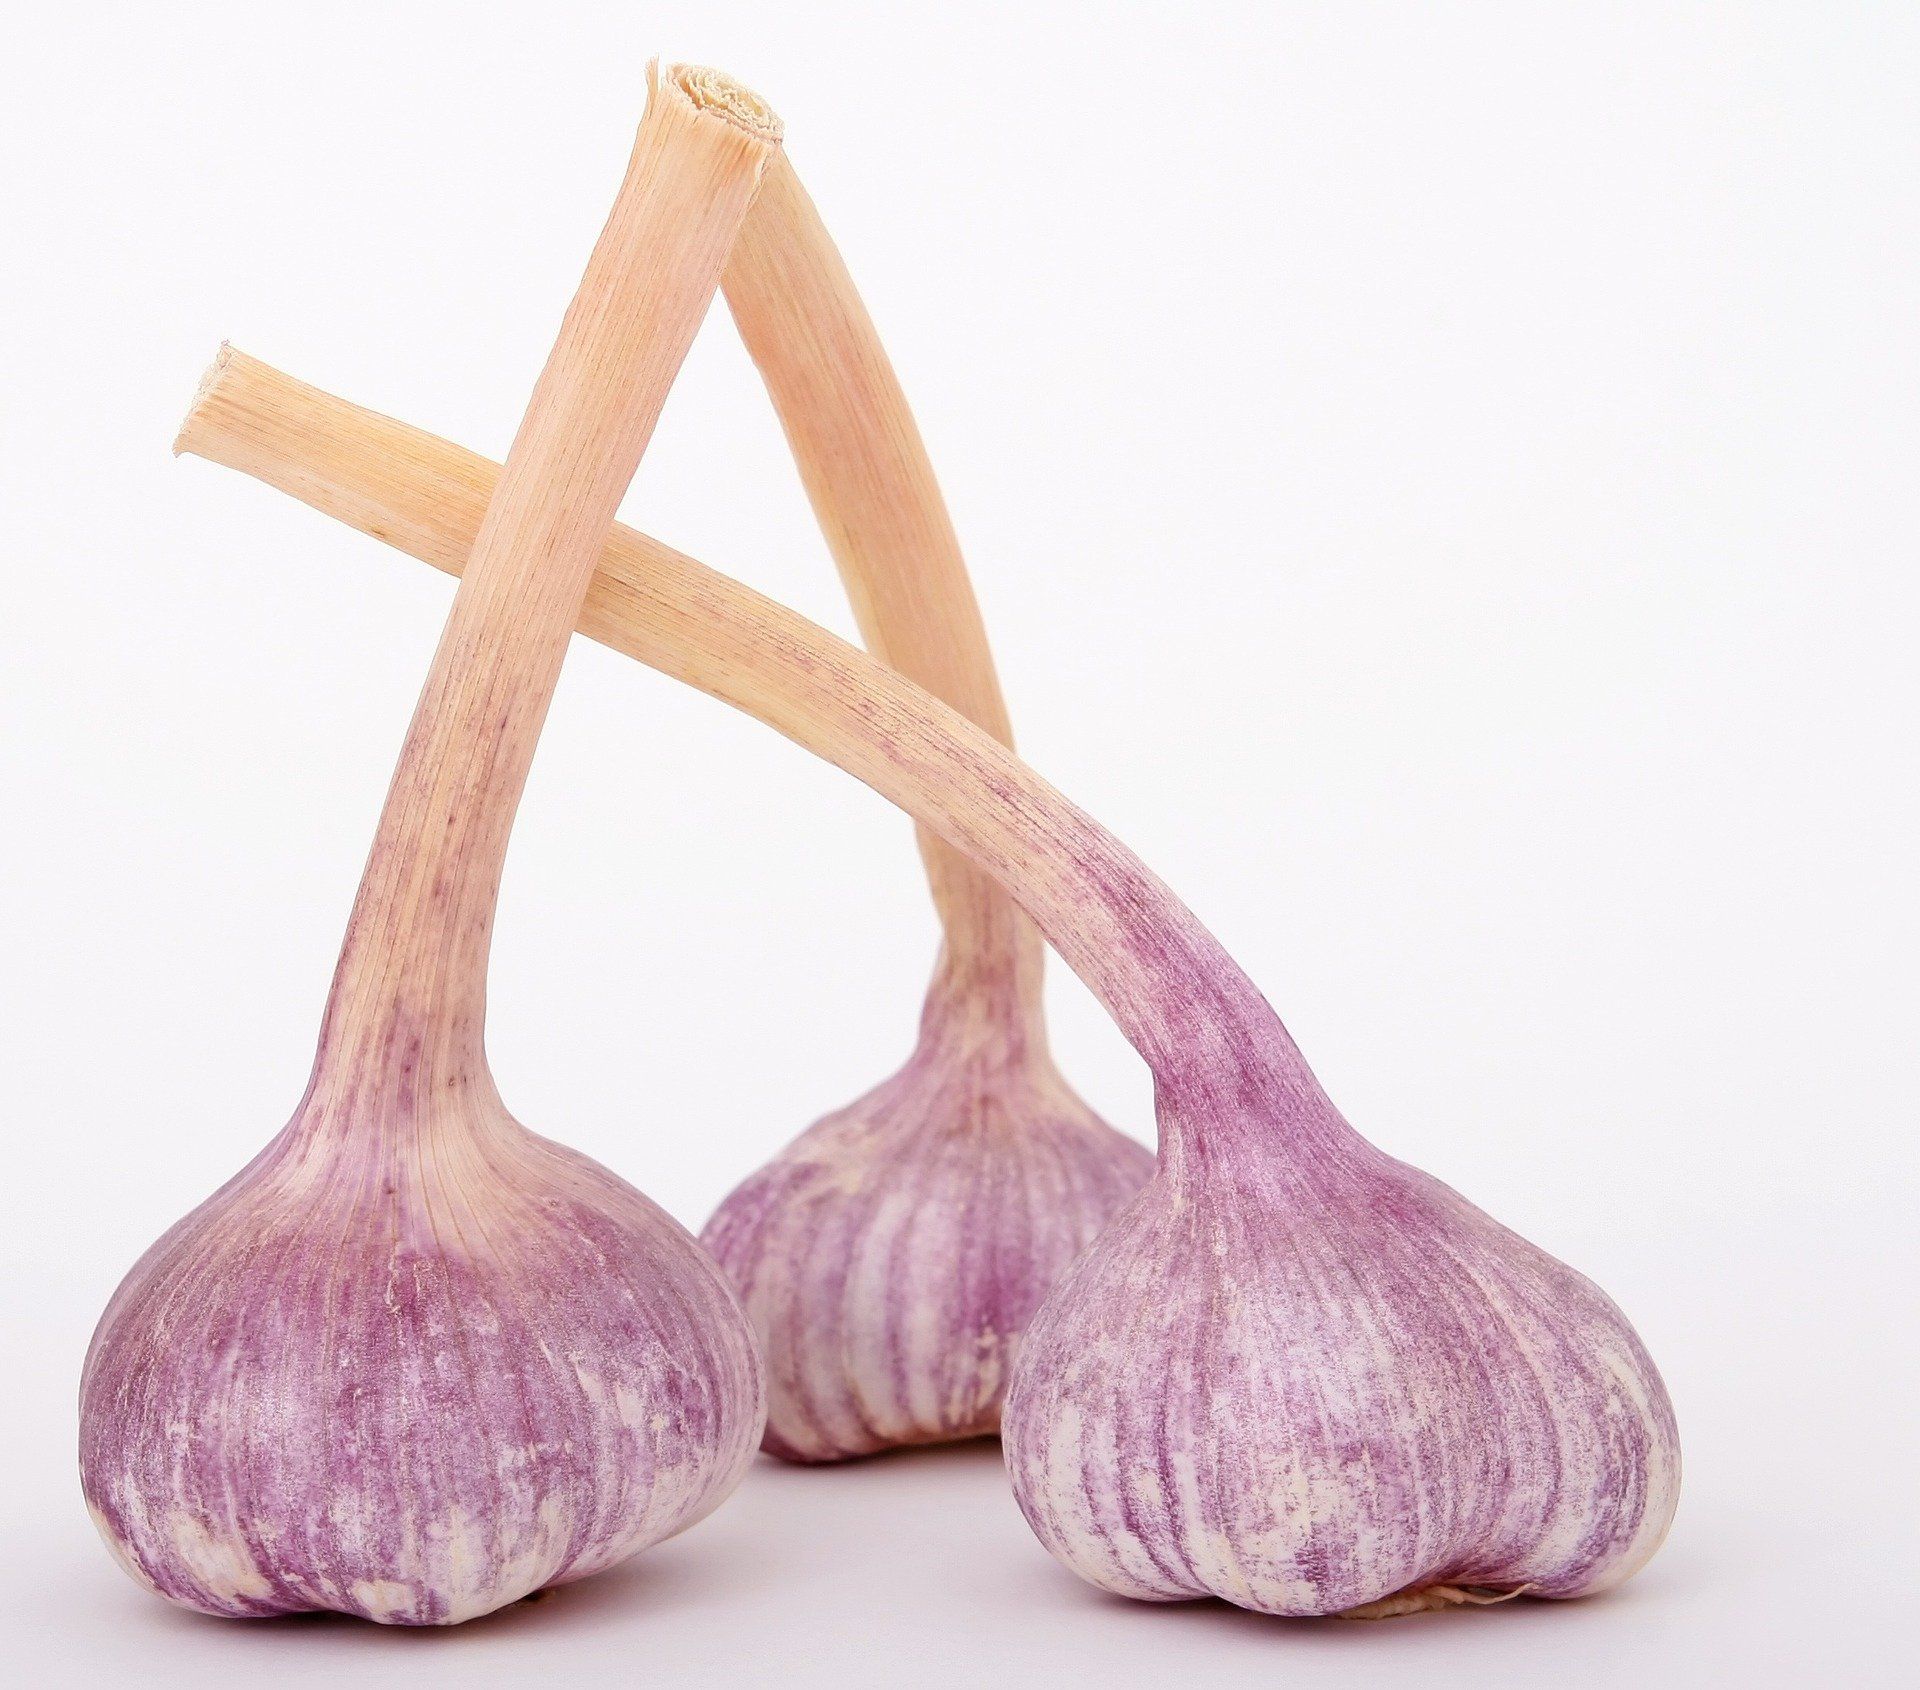 garlic immune support help